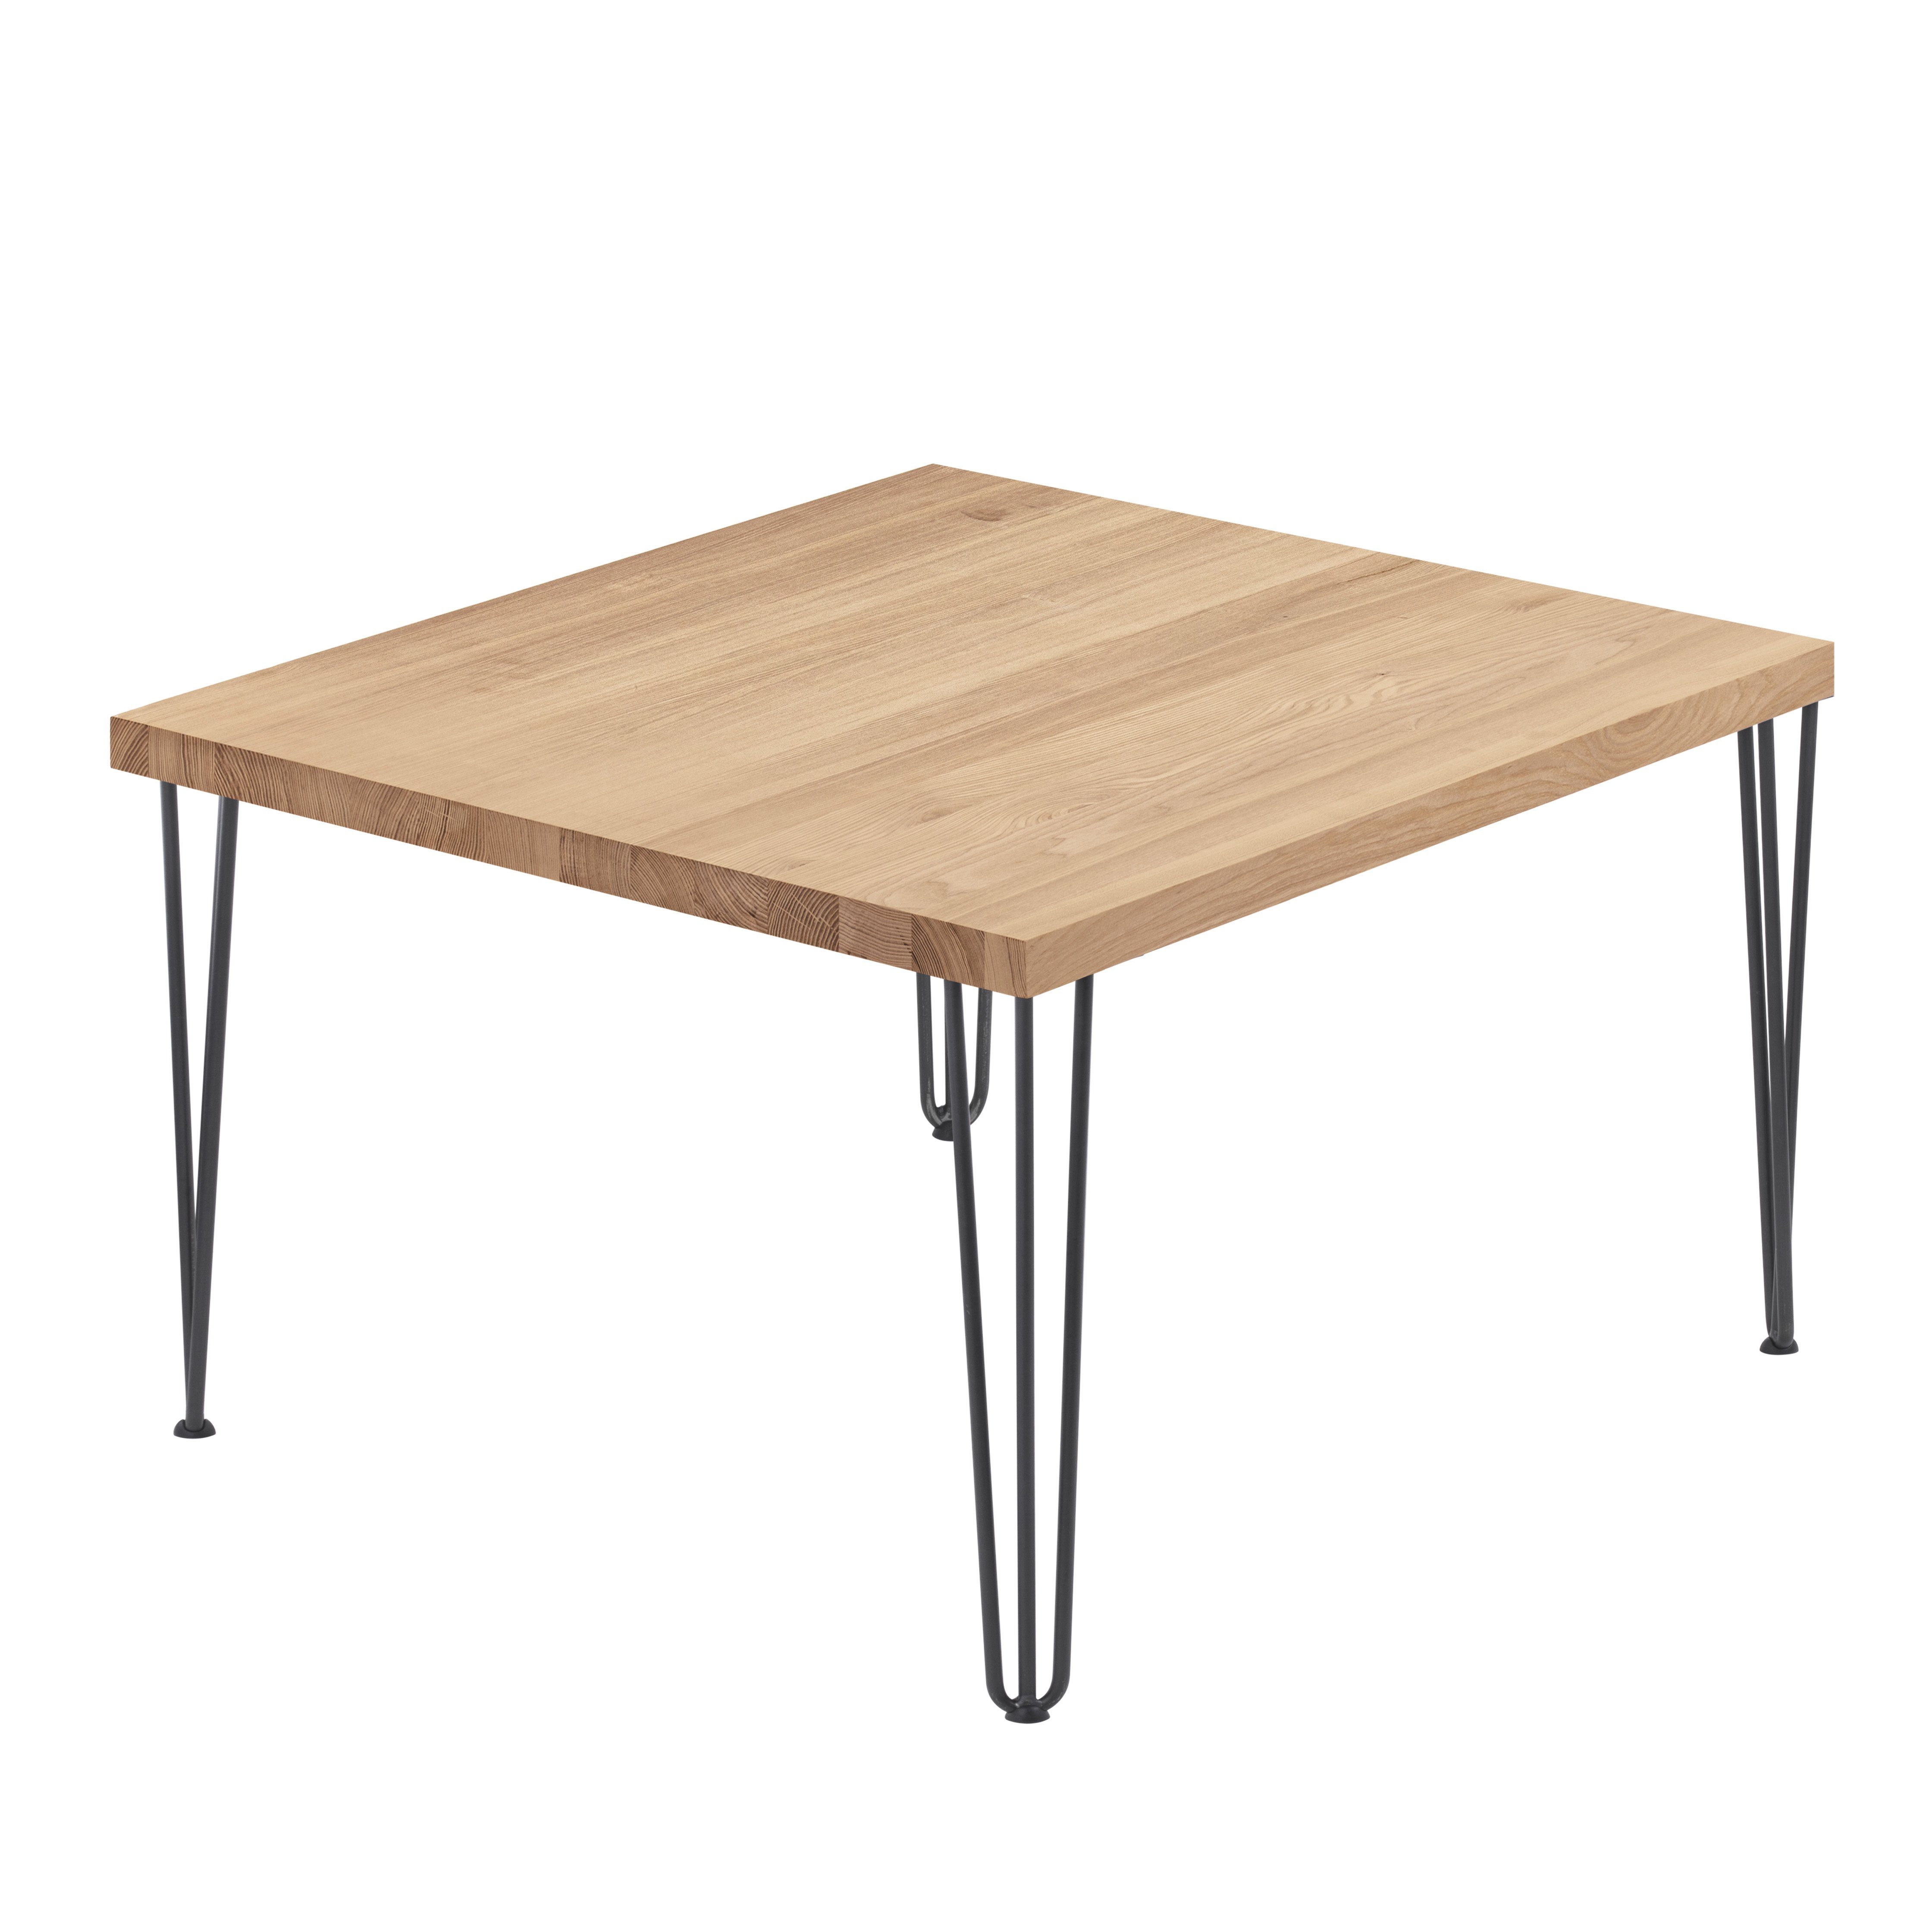 | Massivholz gerade LAMO mit Esstisch Küchentisch Tischplatte Metallgestell Natur Klarlack Creative Tisch), Manufaktur Rohstahl inkl. Kante (1